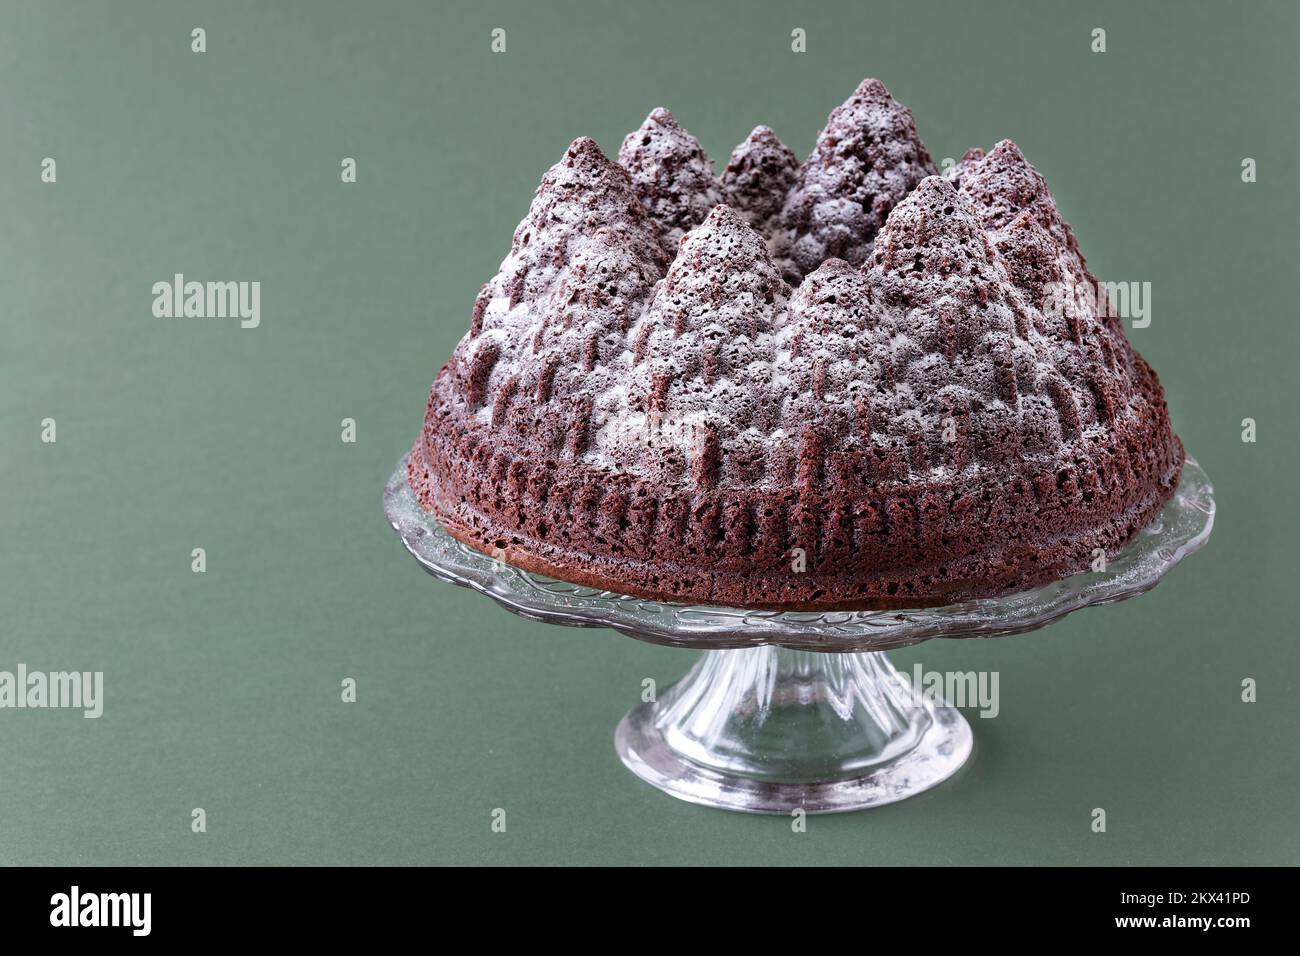 Un gâteau au chocolat de Noël festif. Le gâteau est fait à l'aide d'un moule Bundt pour former la pâte à gâteau dans les formes d'arbre. Une saupoudrez de sucre glace. Banque D'Images